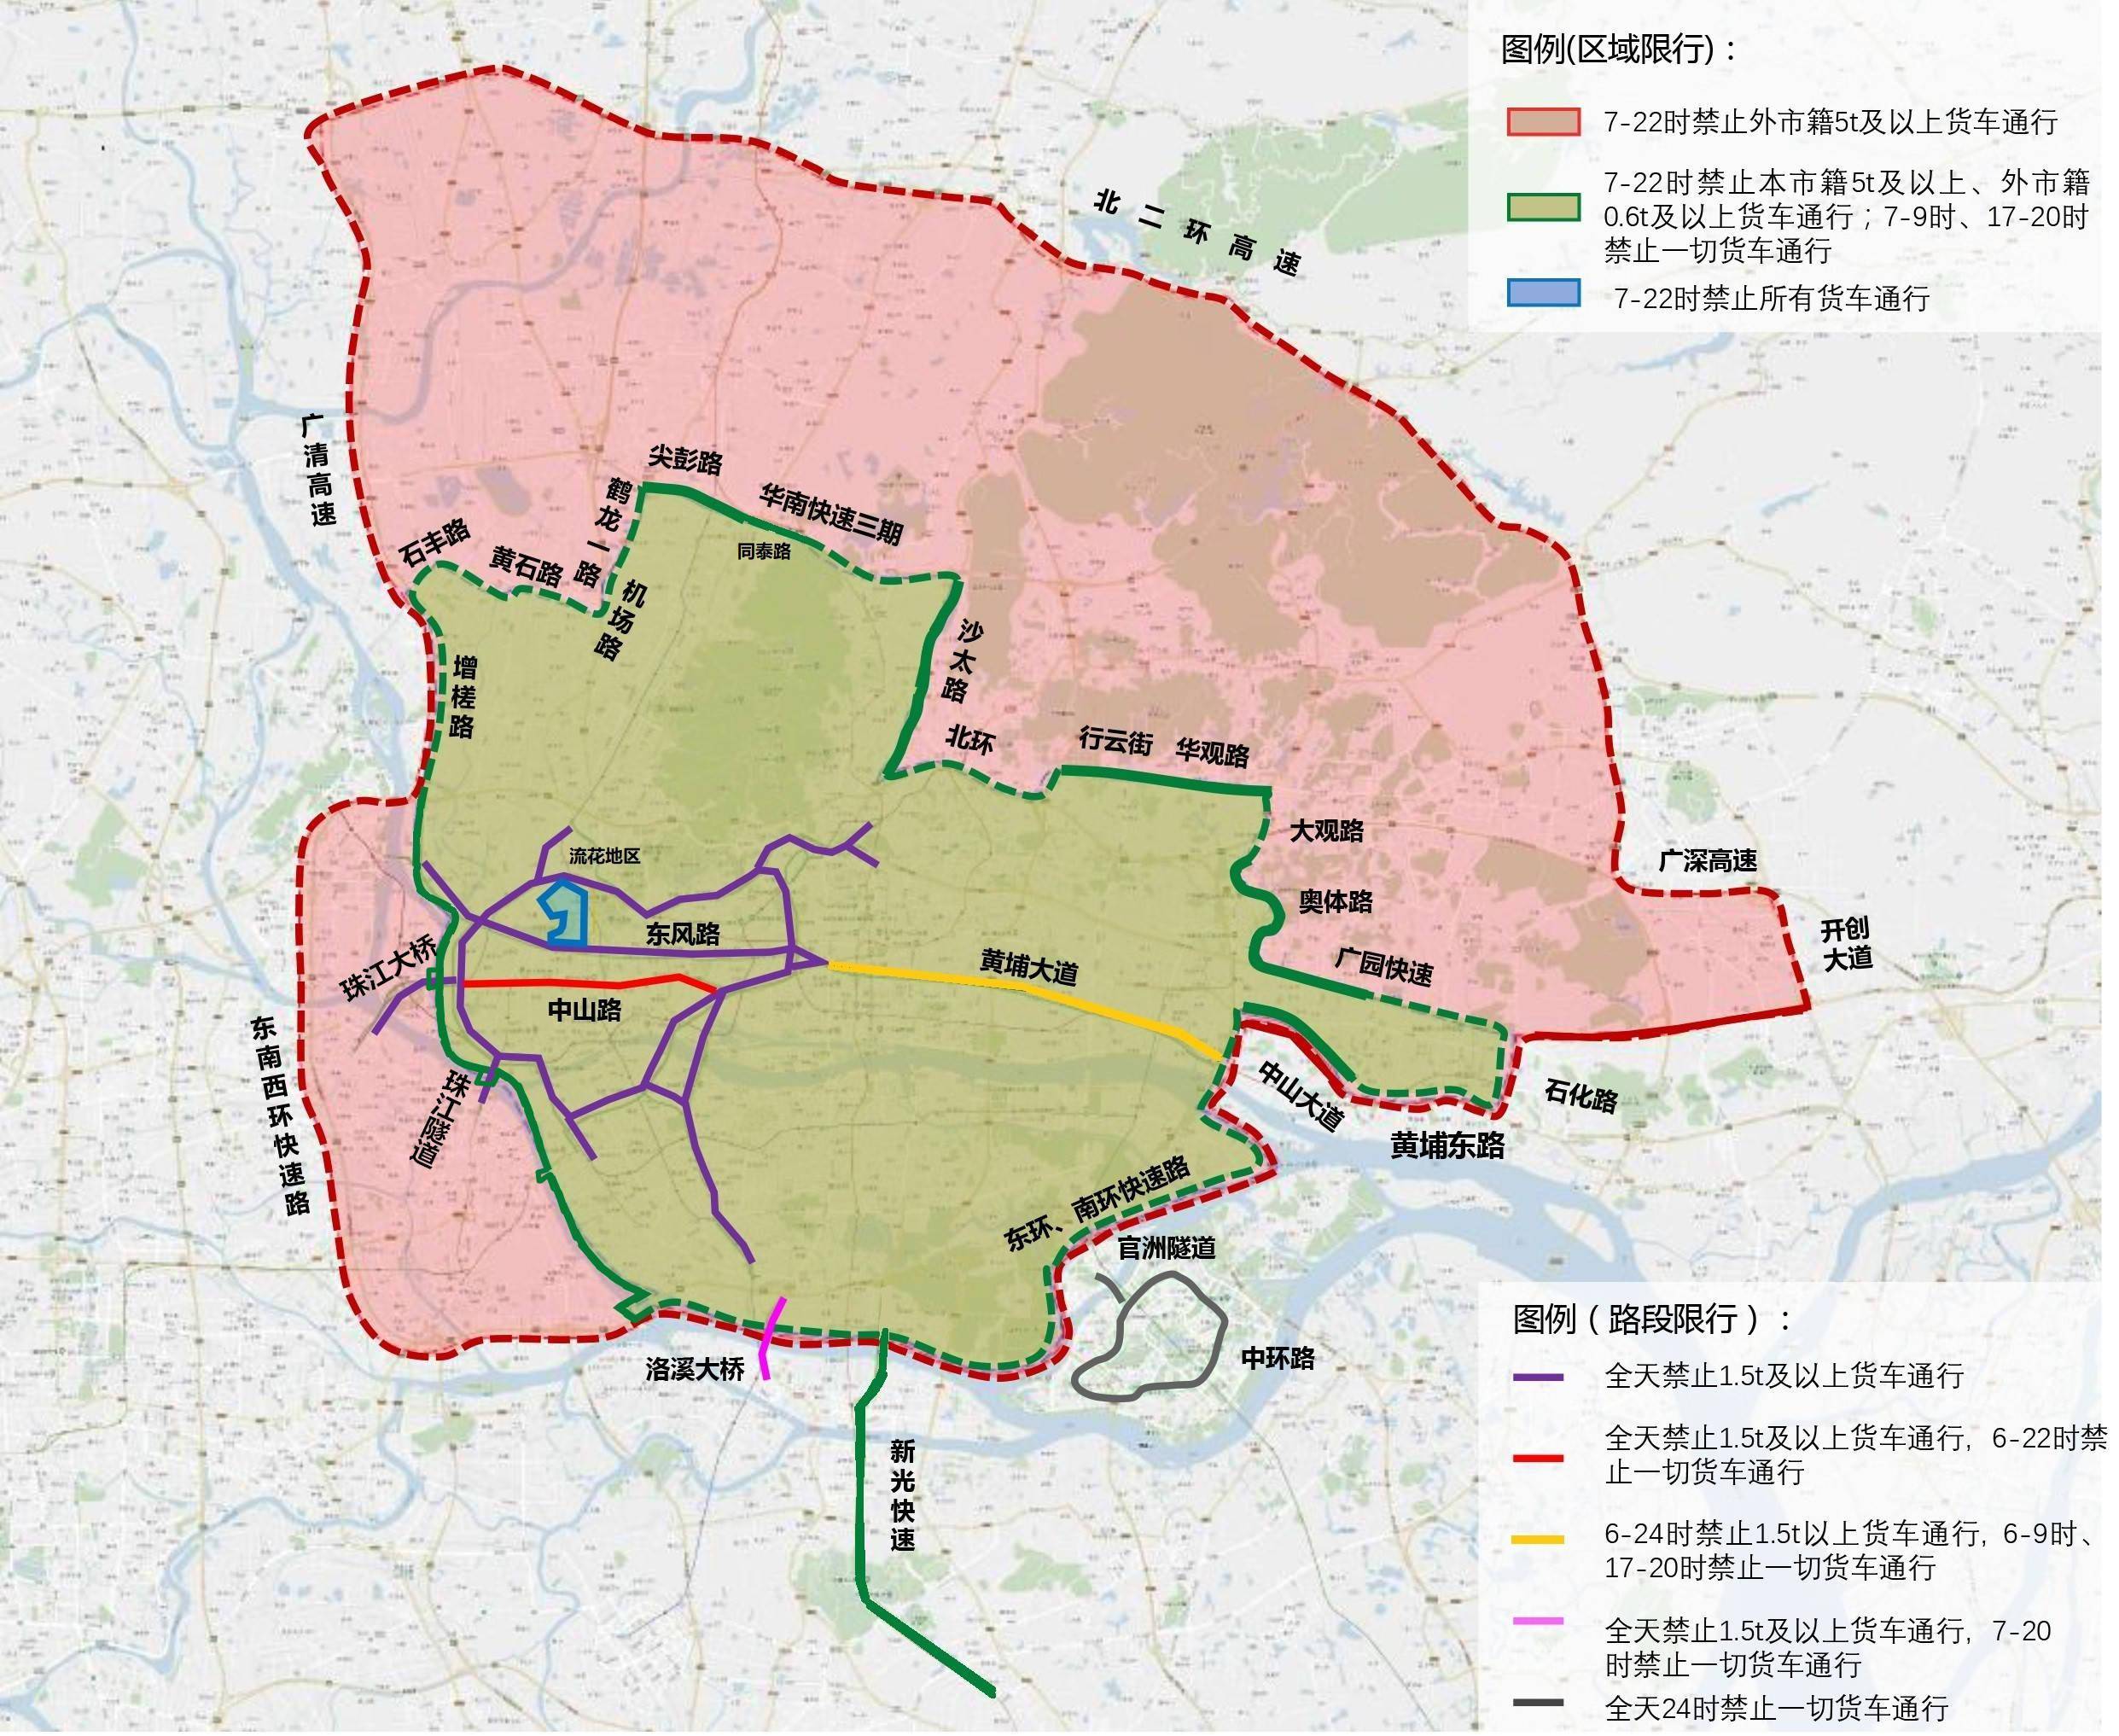 10月1日起广州货车限行区域有部分调整